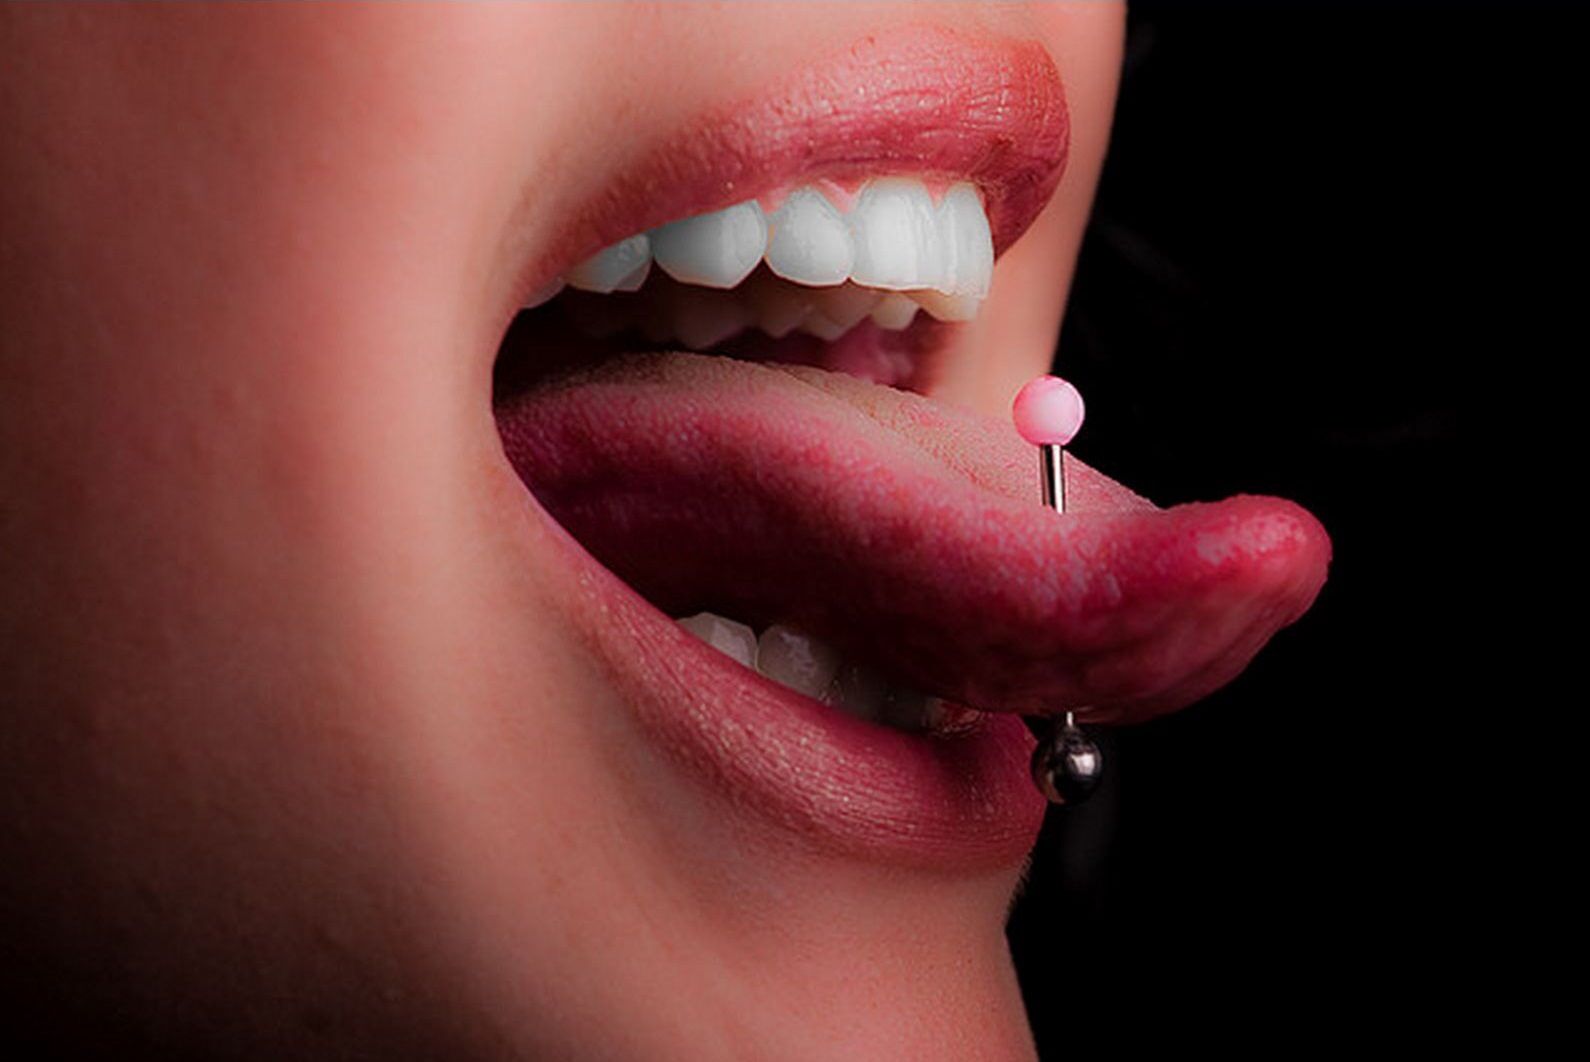 Hinchazon de la perforacion de la lengua causas y tratamiento